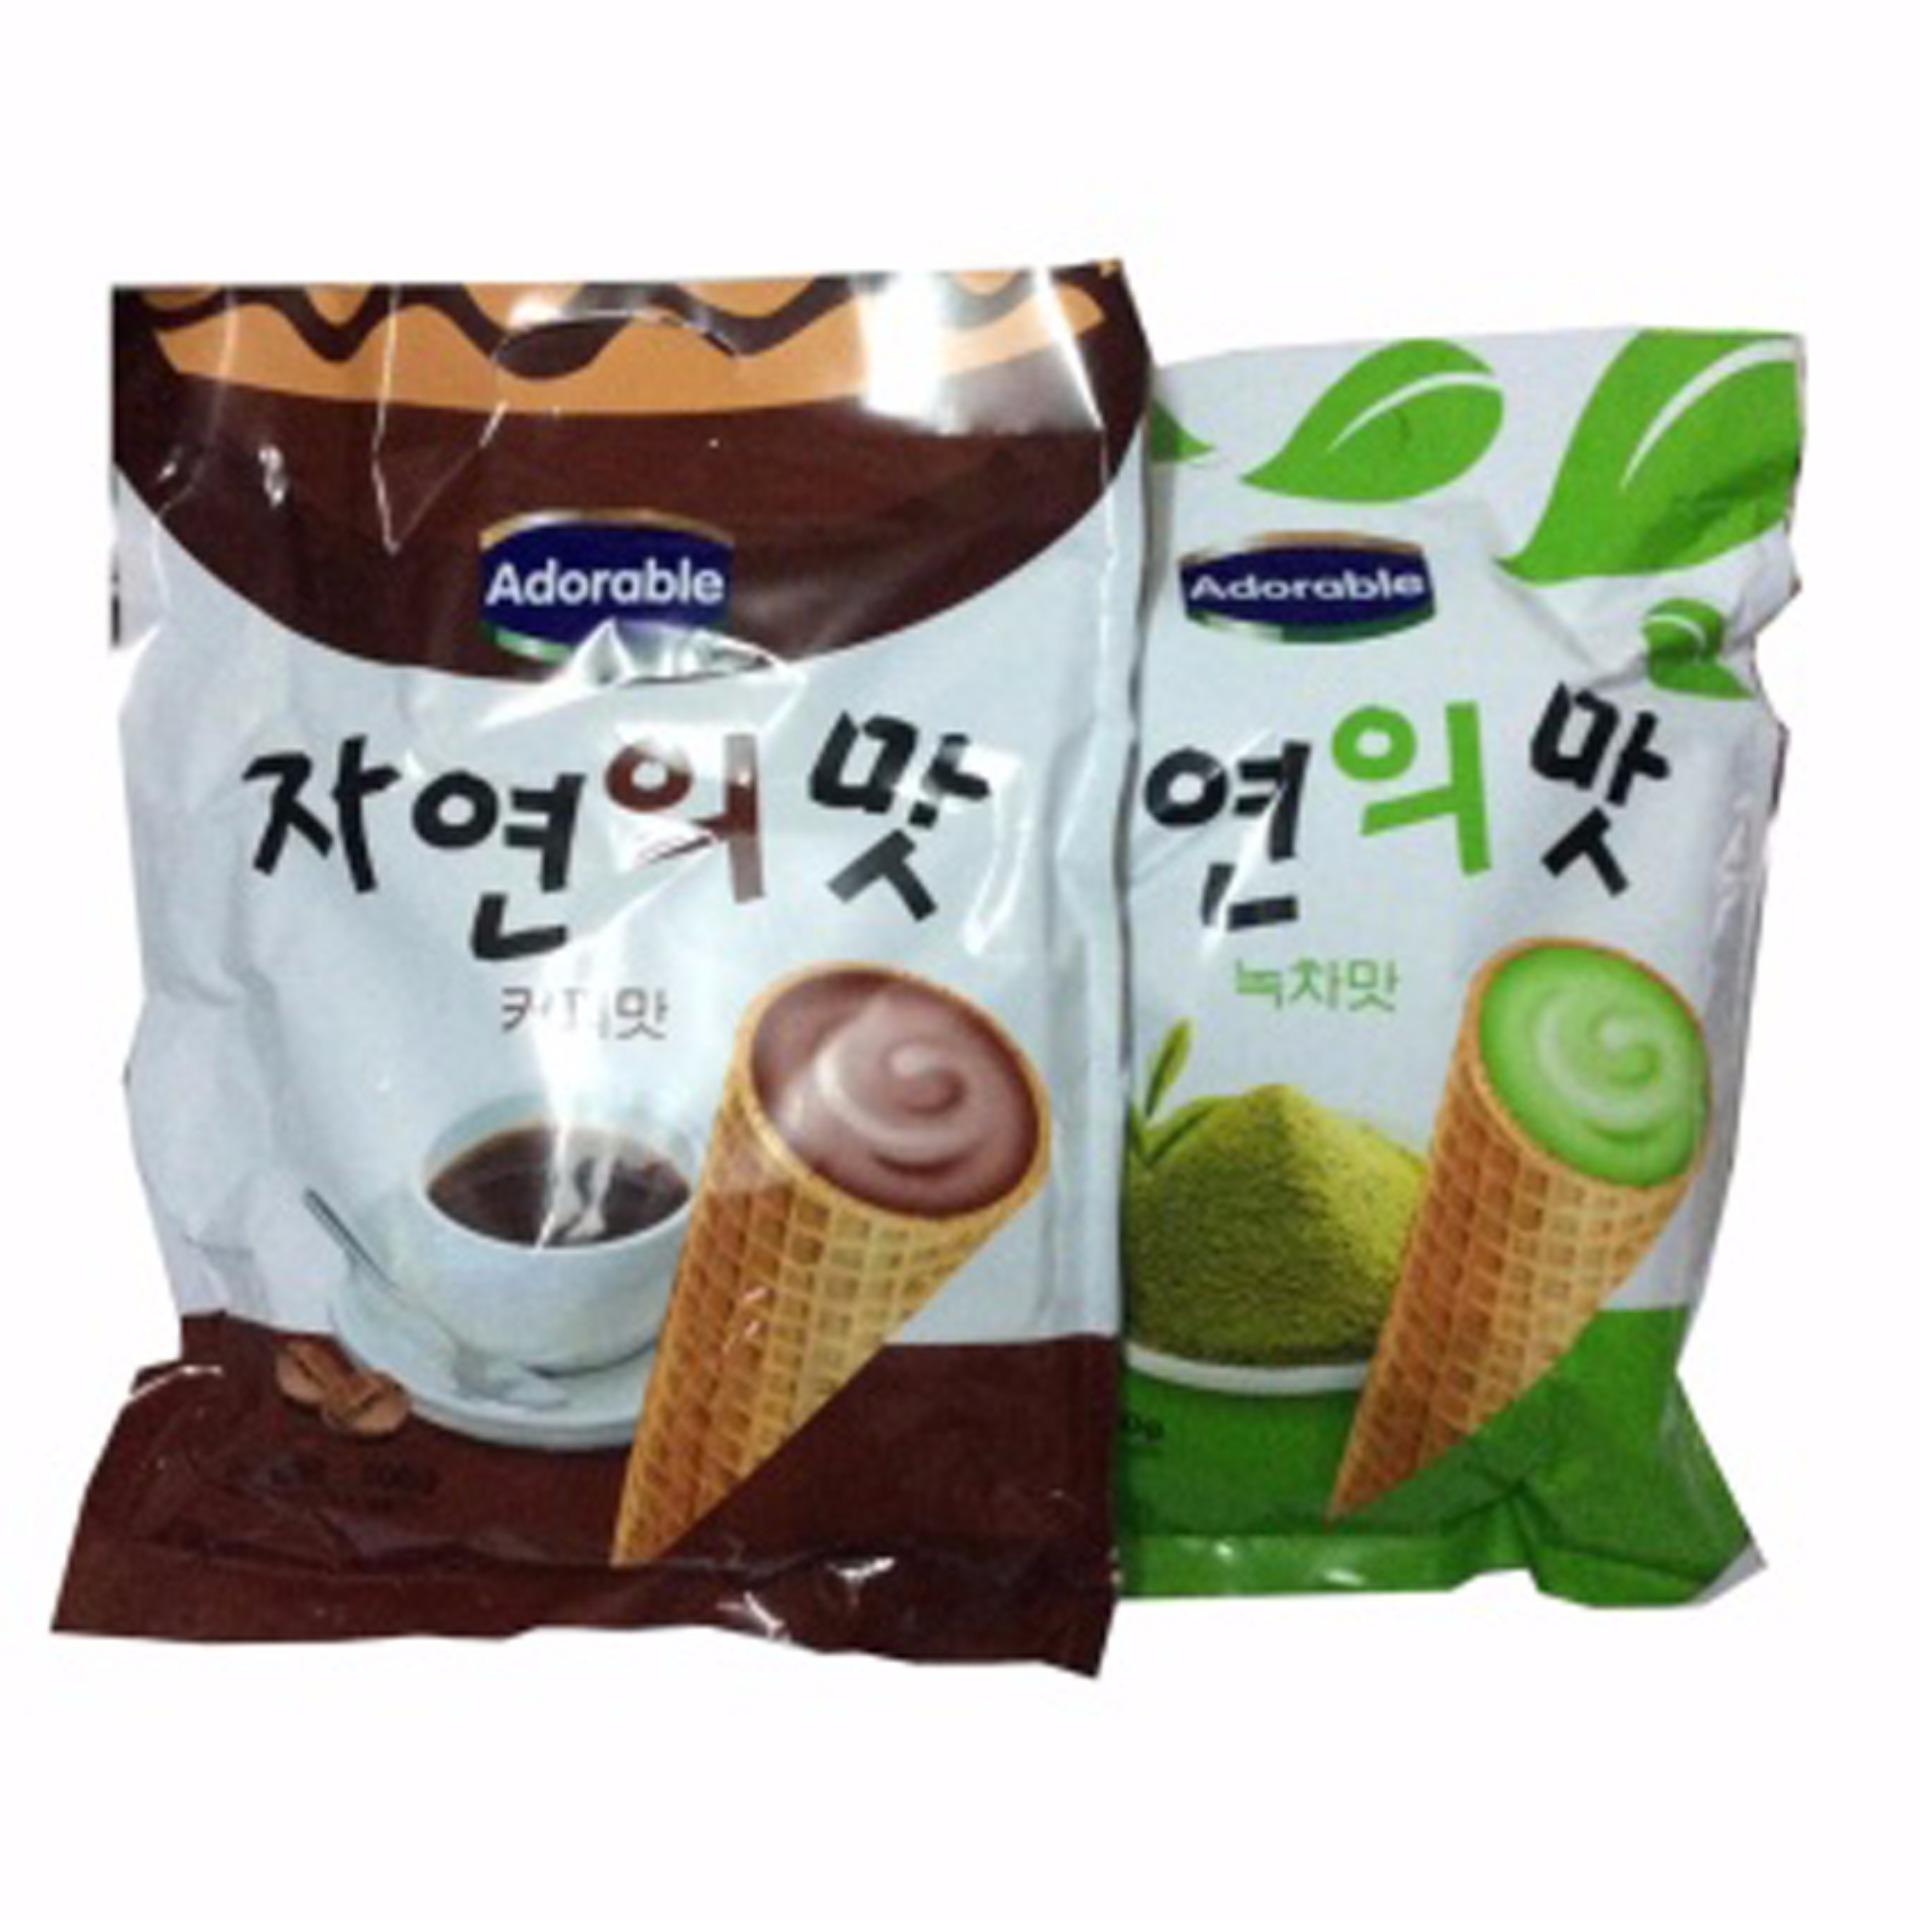 Bộ 2 Gói Bánh ốc quế Adorable (Kem Cà Phê+Trà Xanh) 300g/gói Hàn Quốc